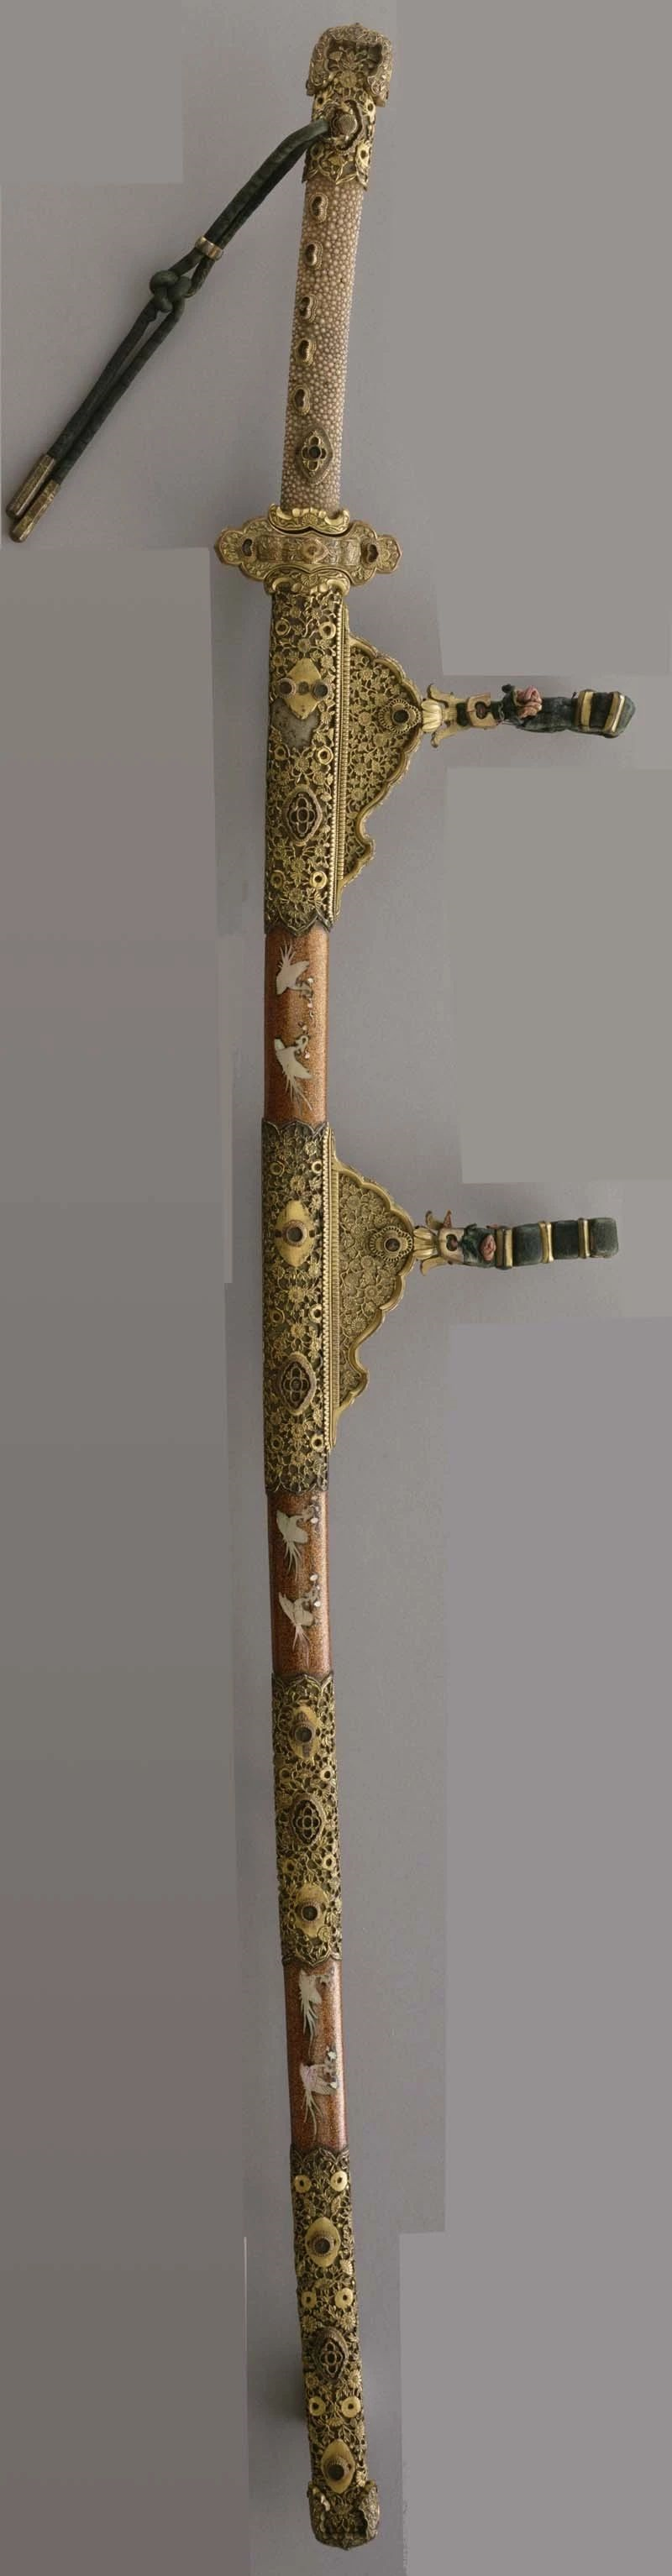 性的"饰剑,又称为"饰太刀,刀装基本上传承自金银钿装唐大刀的样式